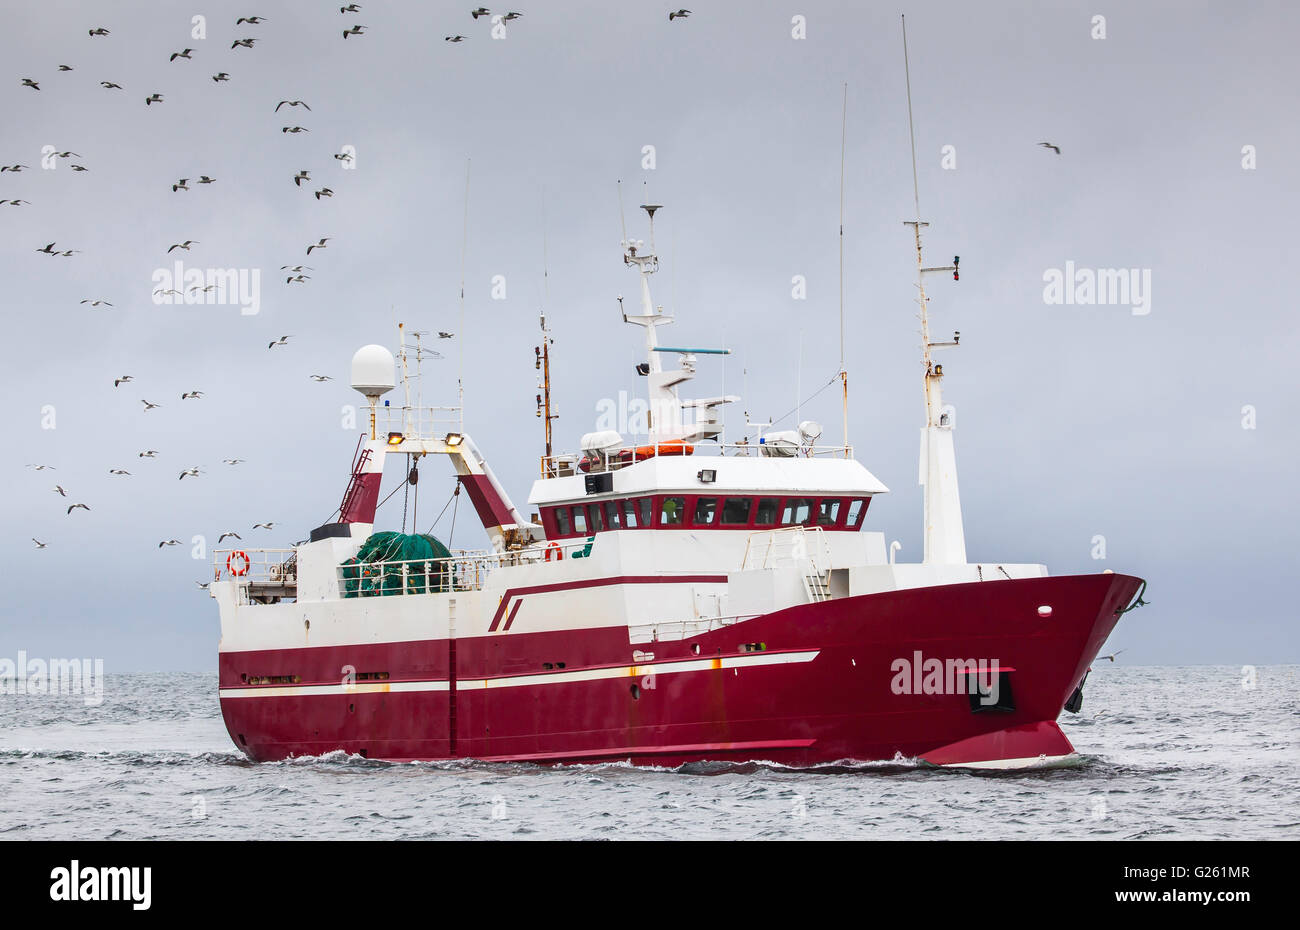 Chalutier de pêche naviguant sur l'océan Atlantique nord. Banque D'Images